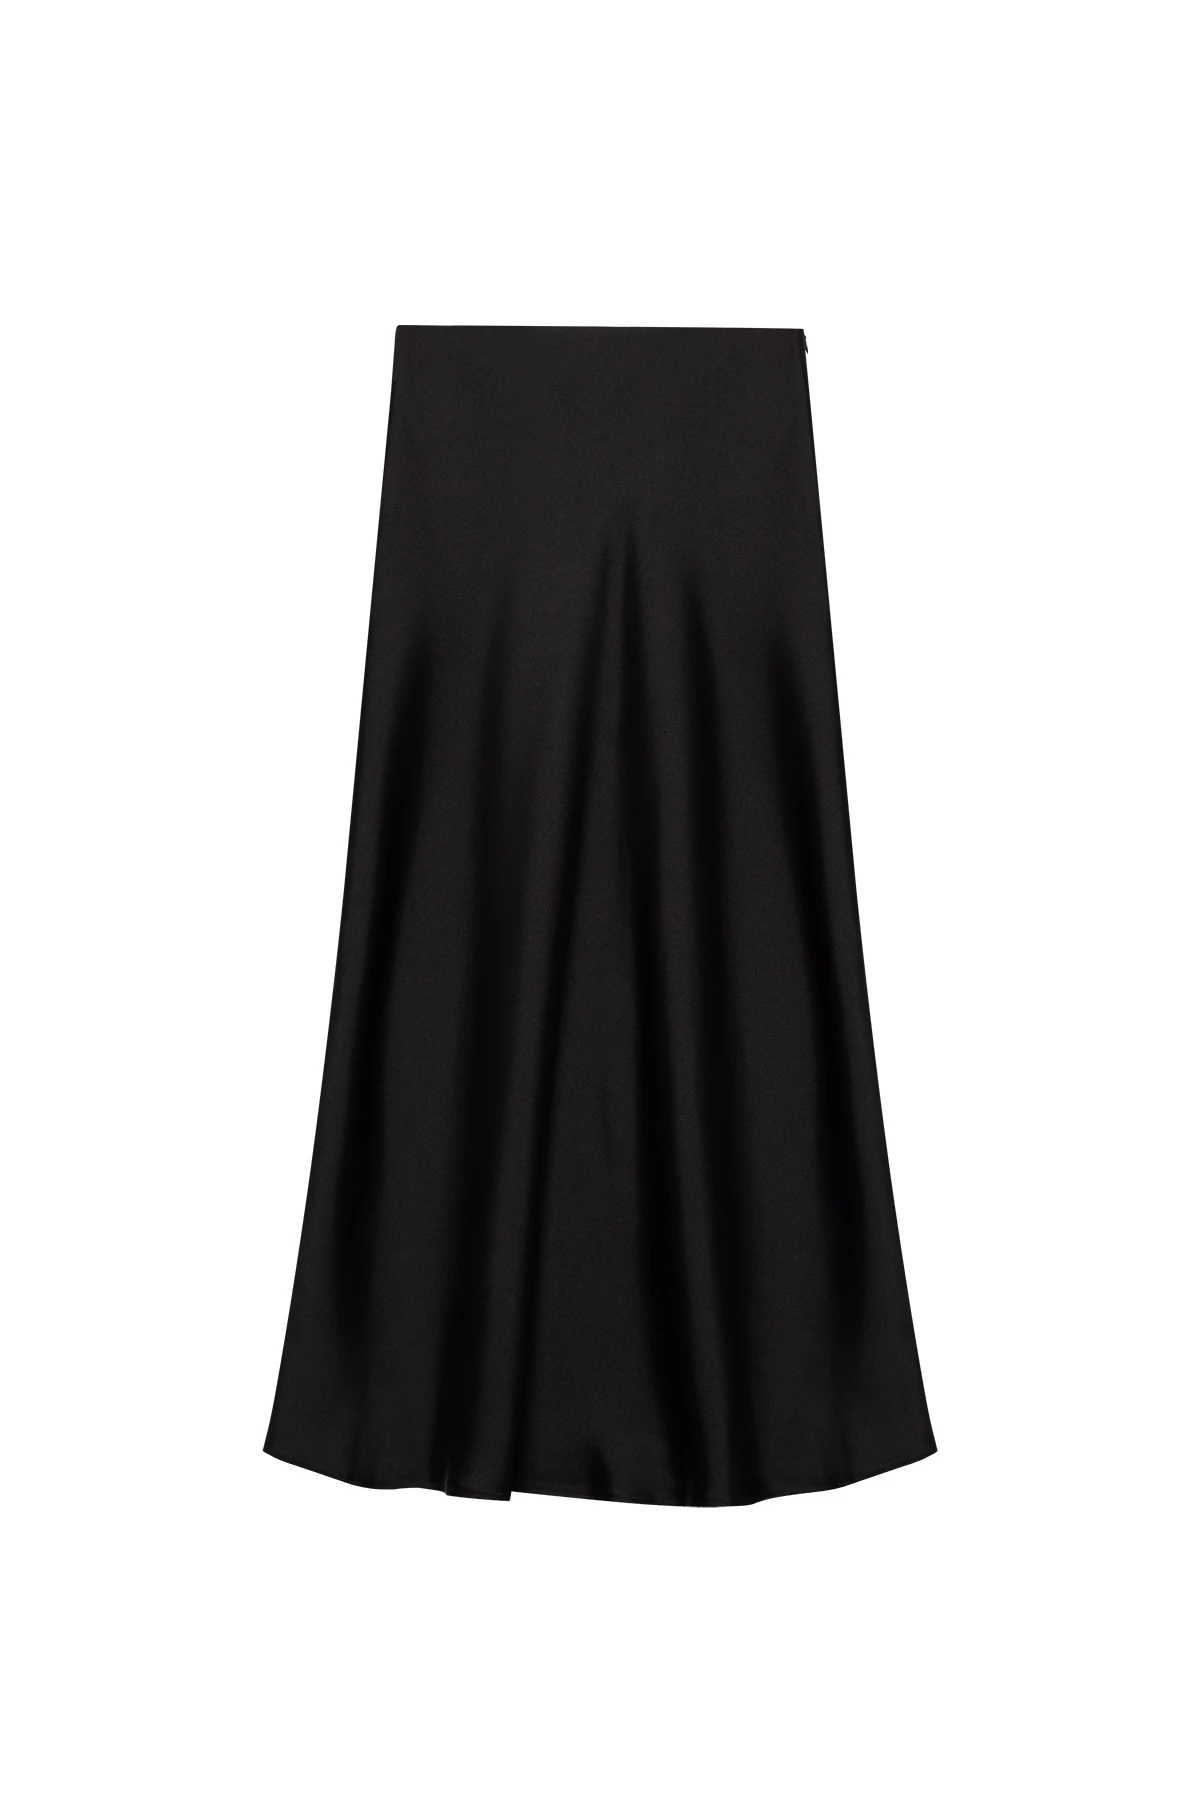 Black satin midi skirt, photo 5